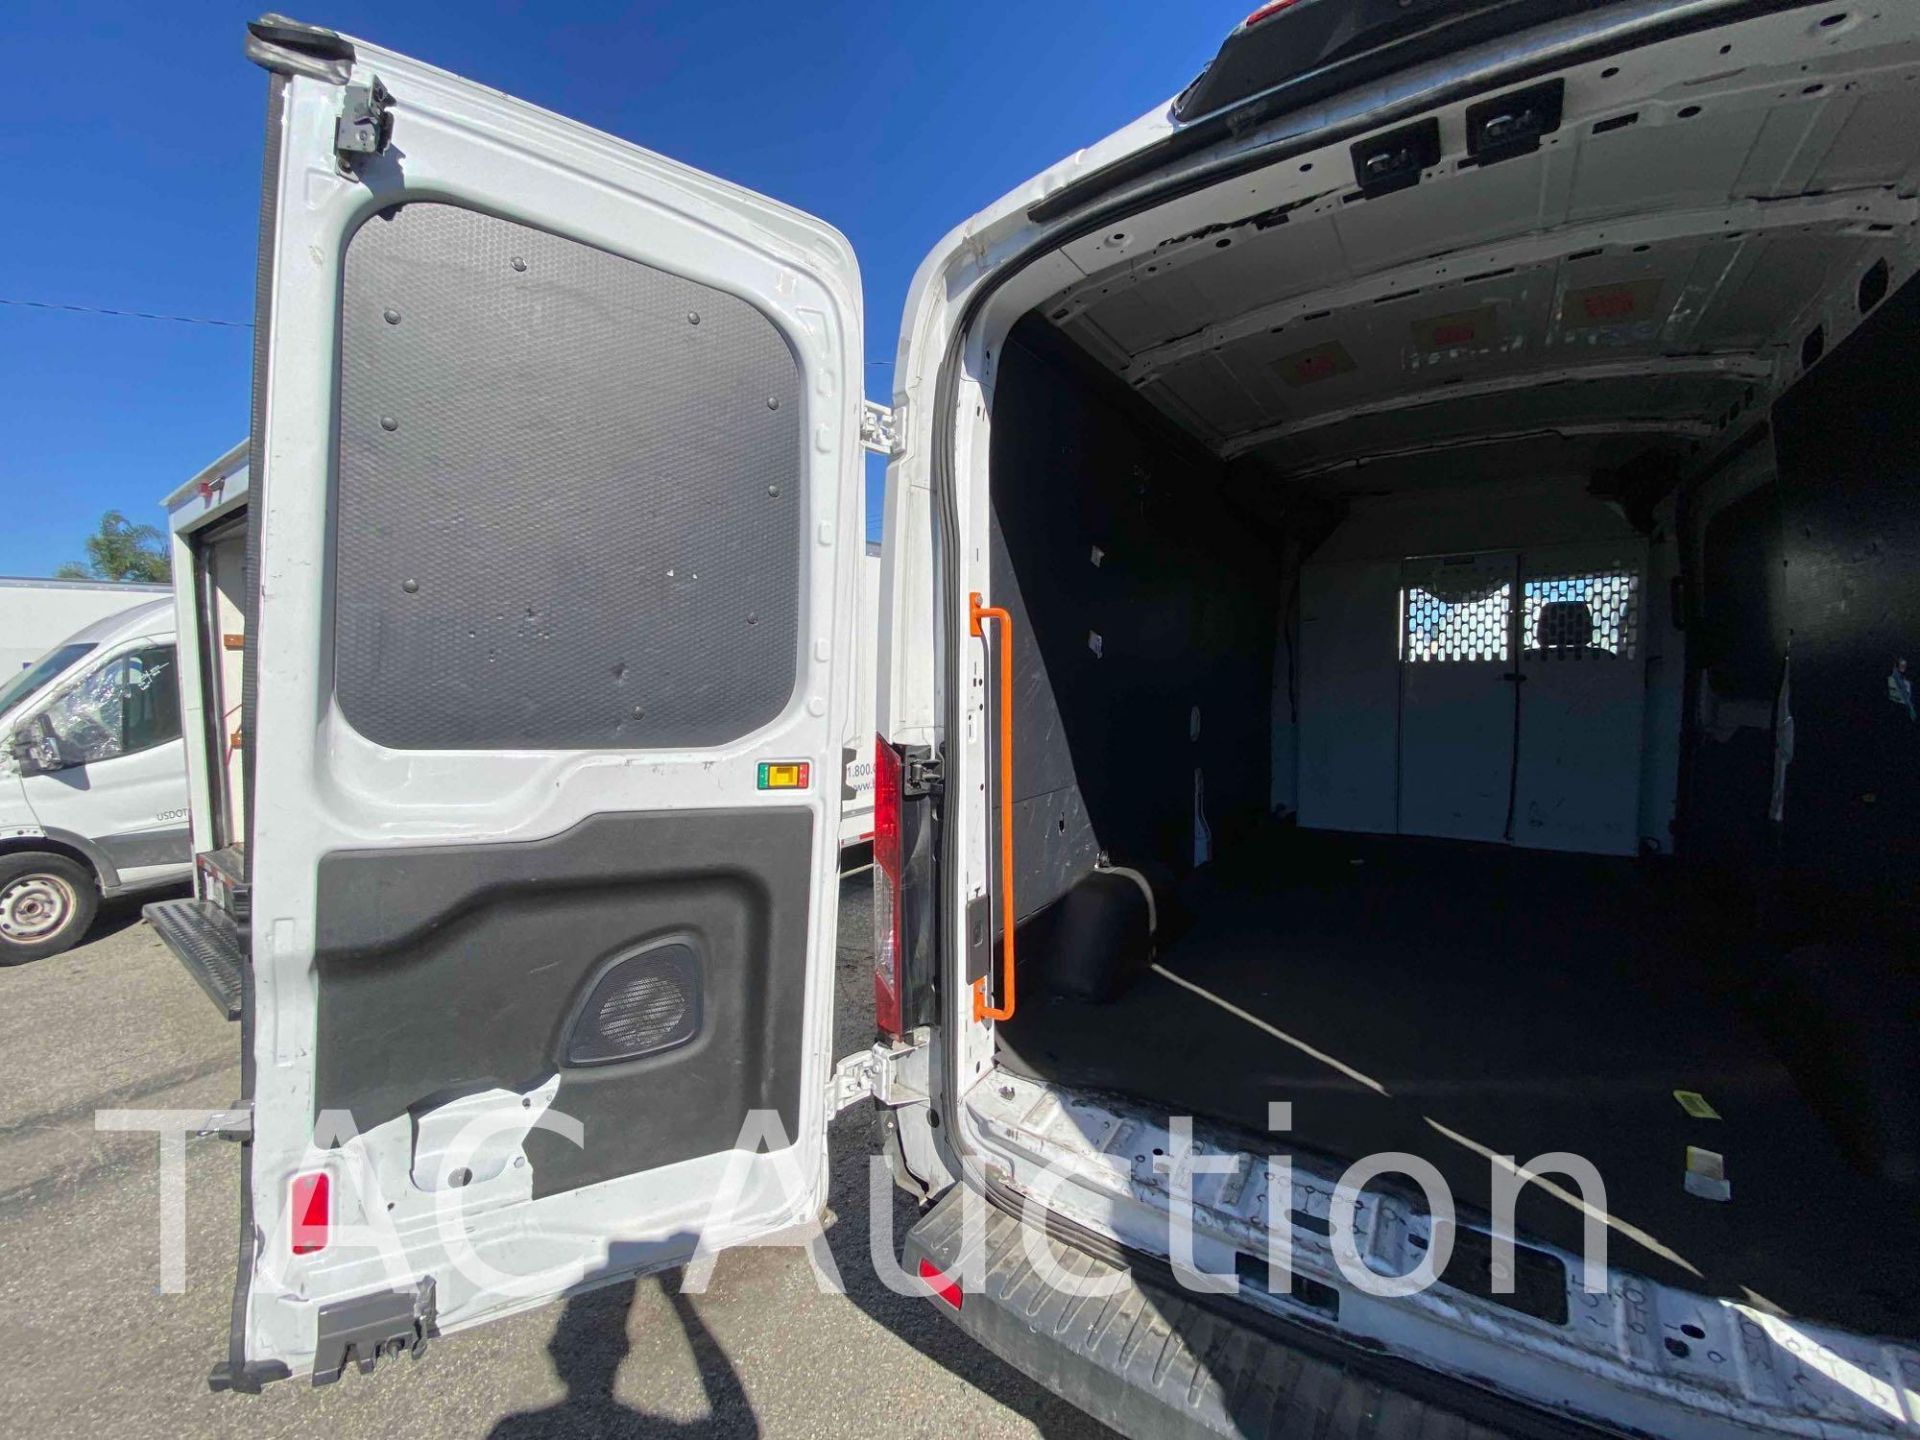 2019 Ford Transit 150 Cargo Van - Image 10 of 56